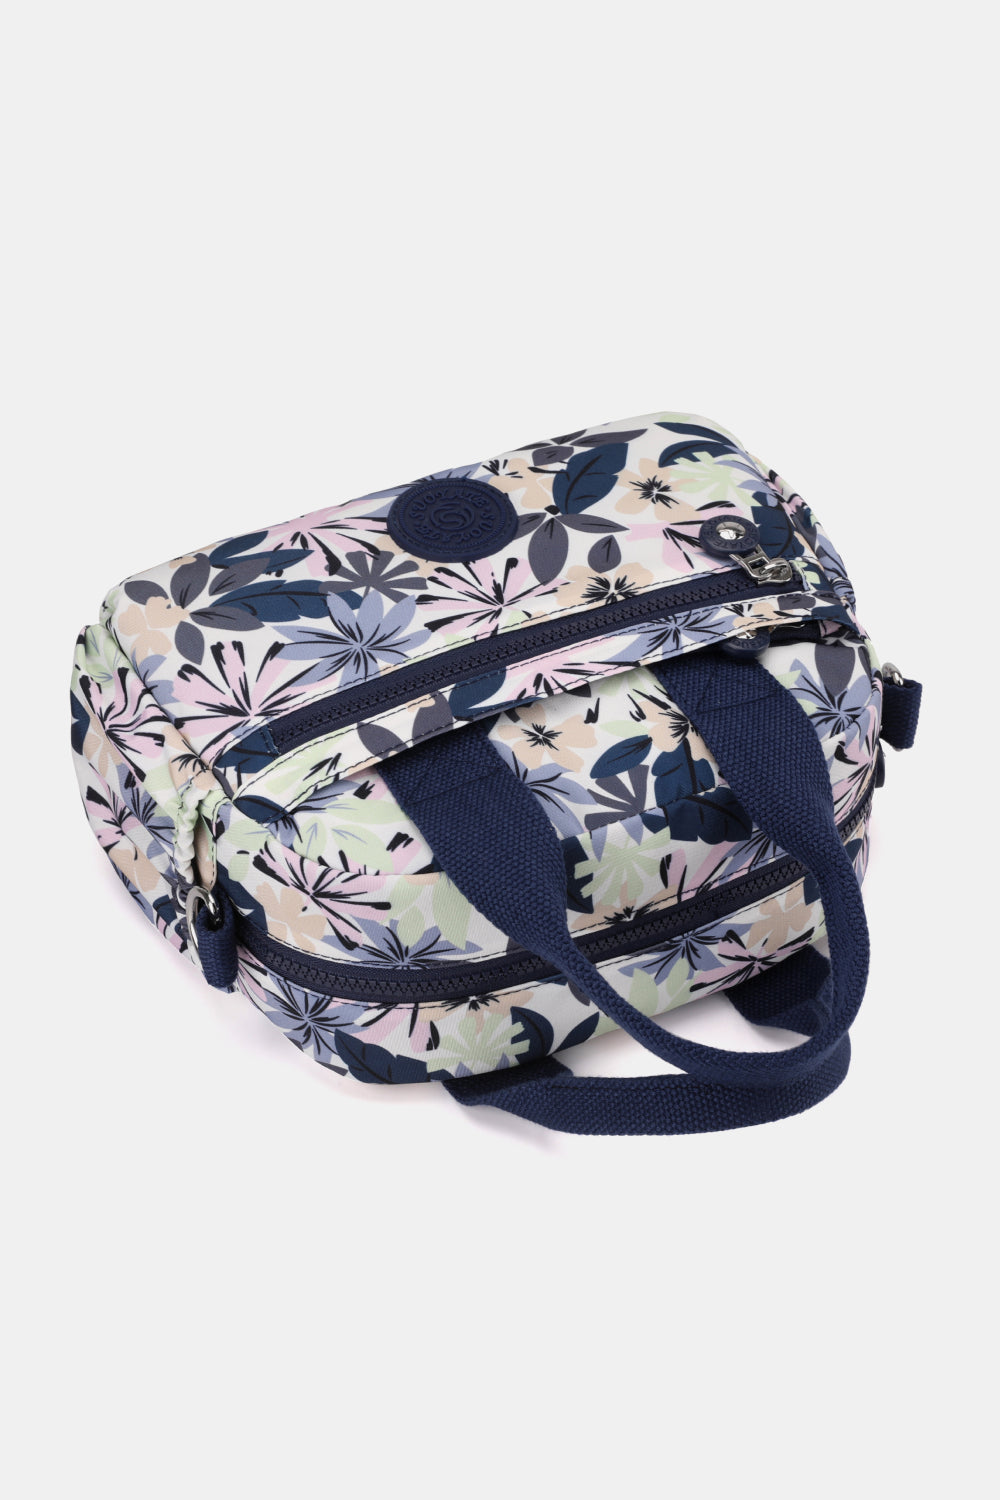 PREORDER- Floral Nylon Handbag